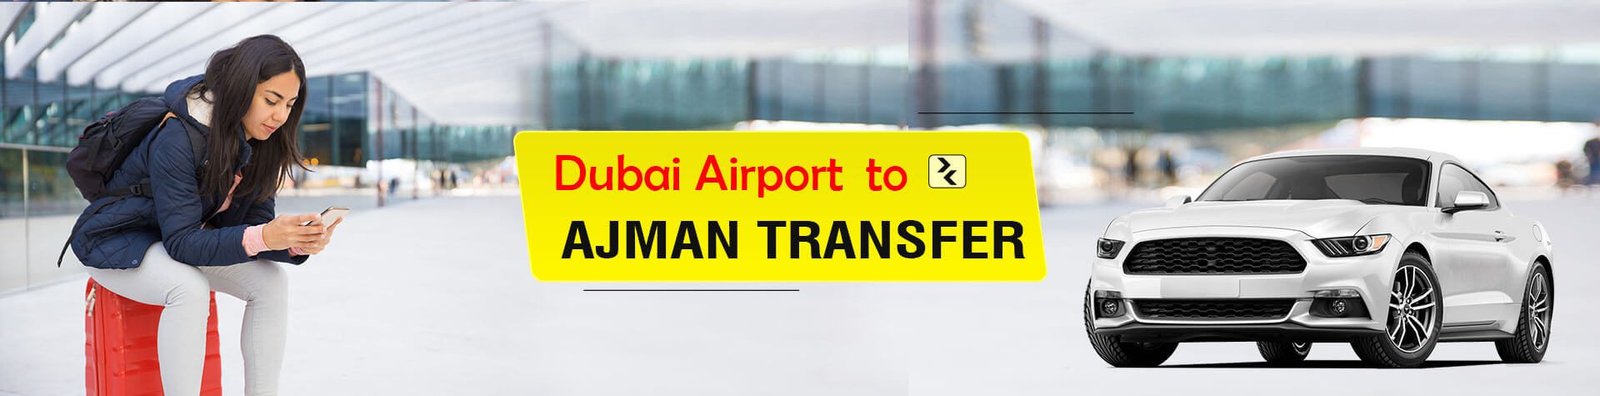 Dubai Airport to Ajman Transfer